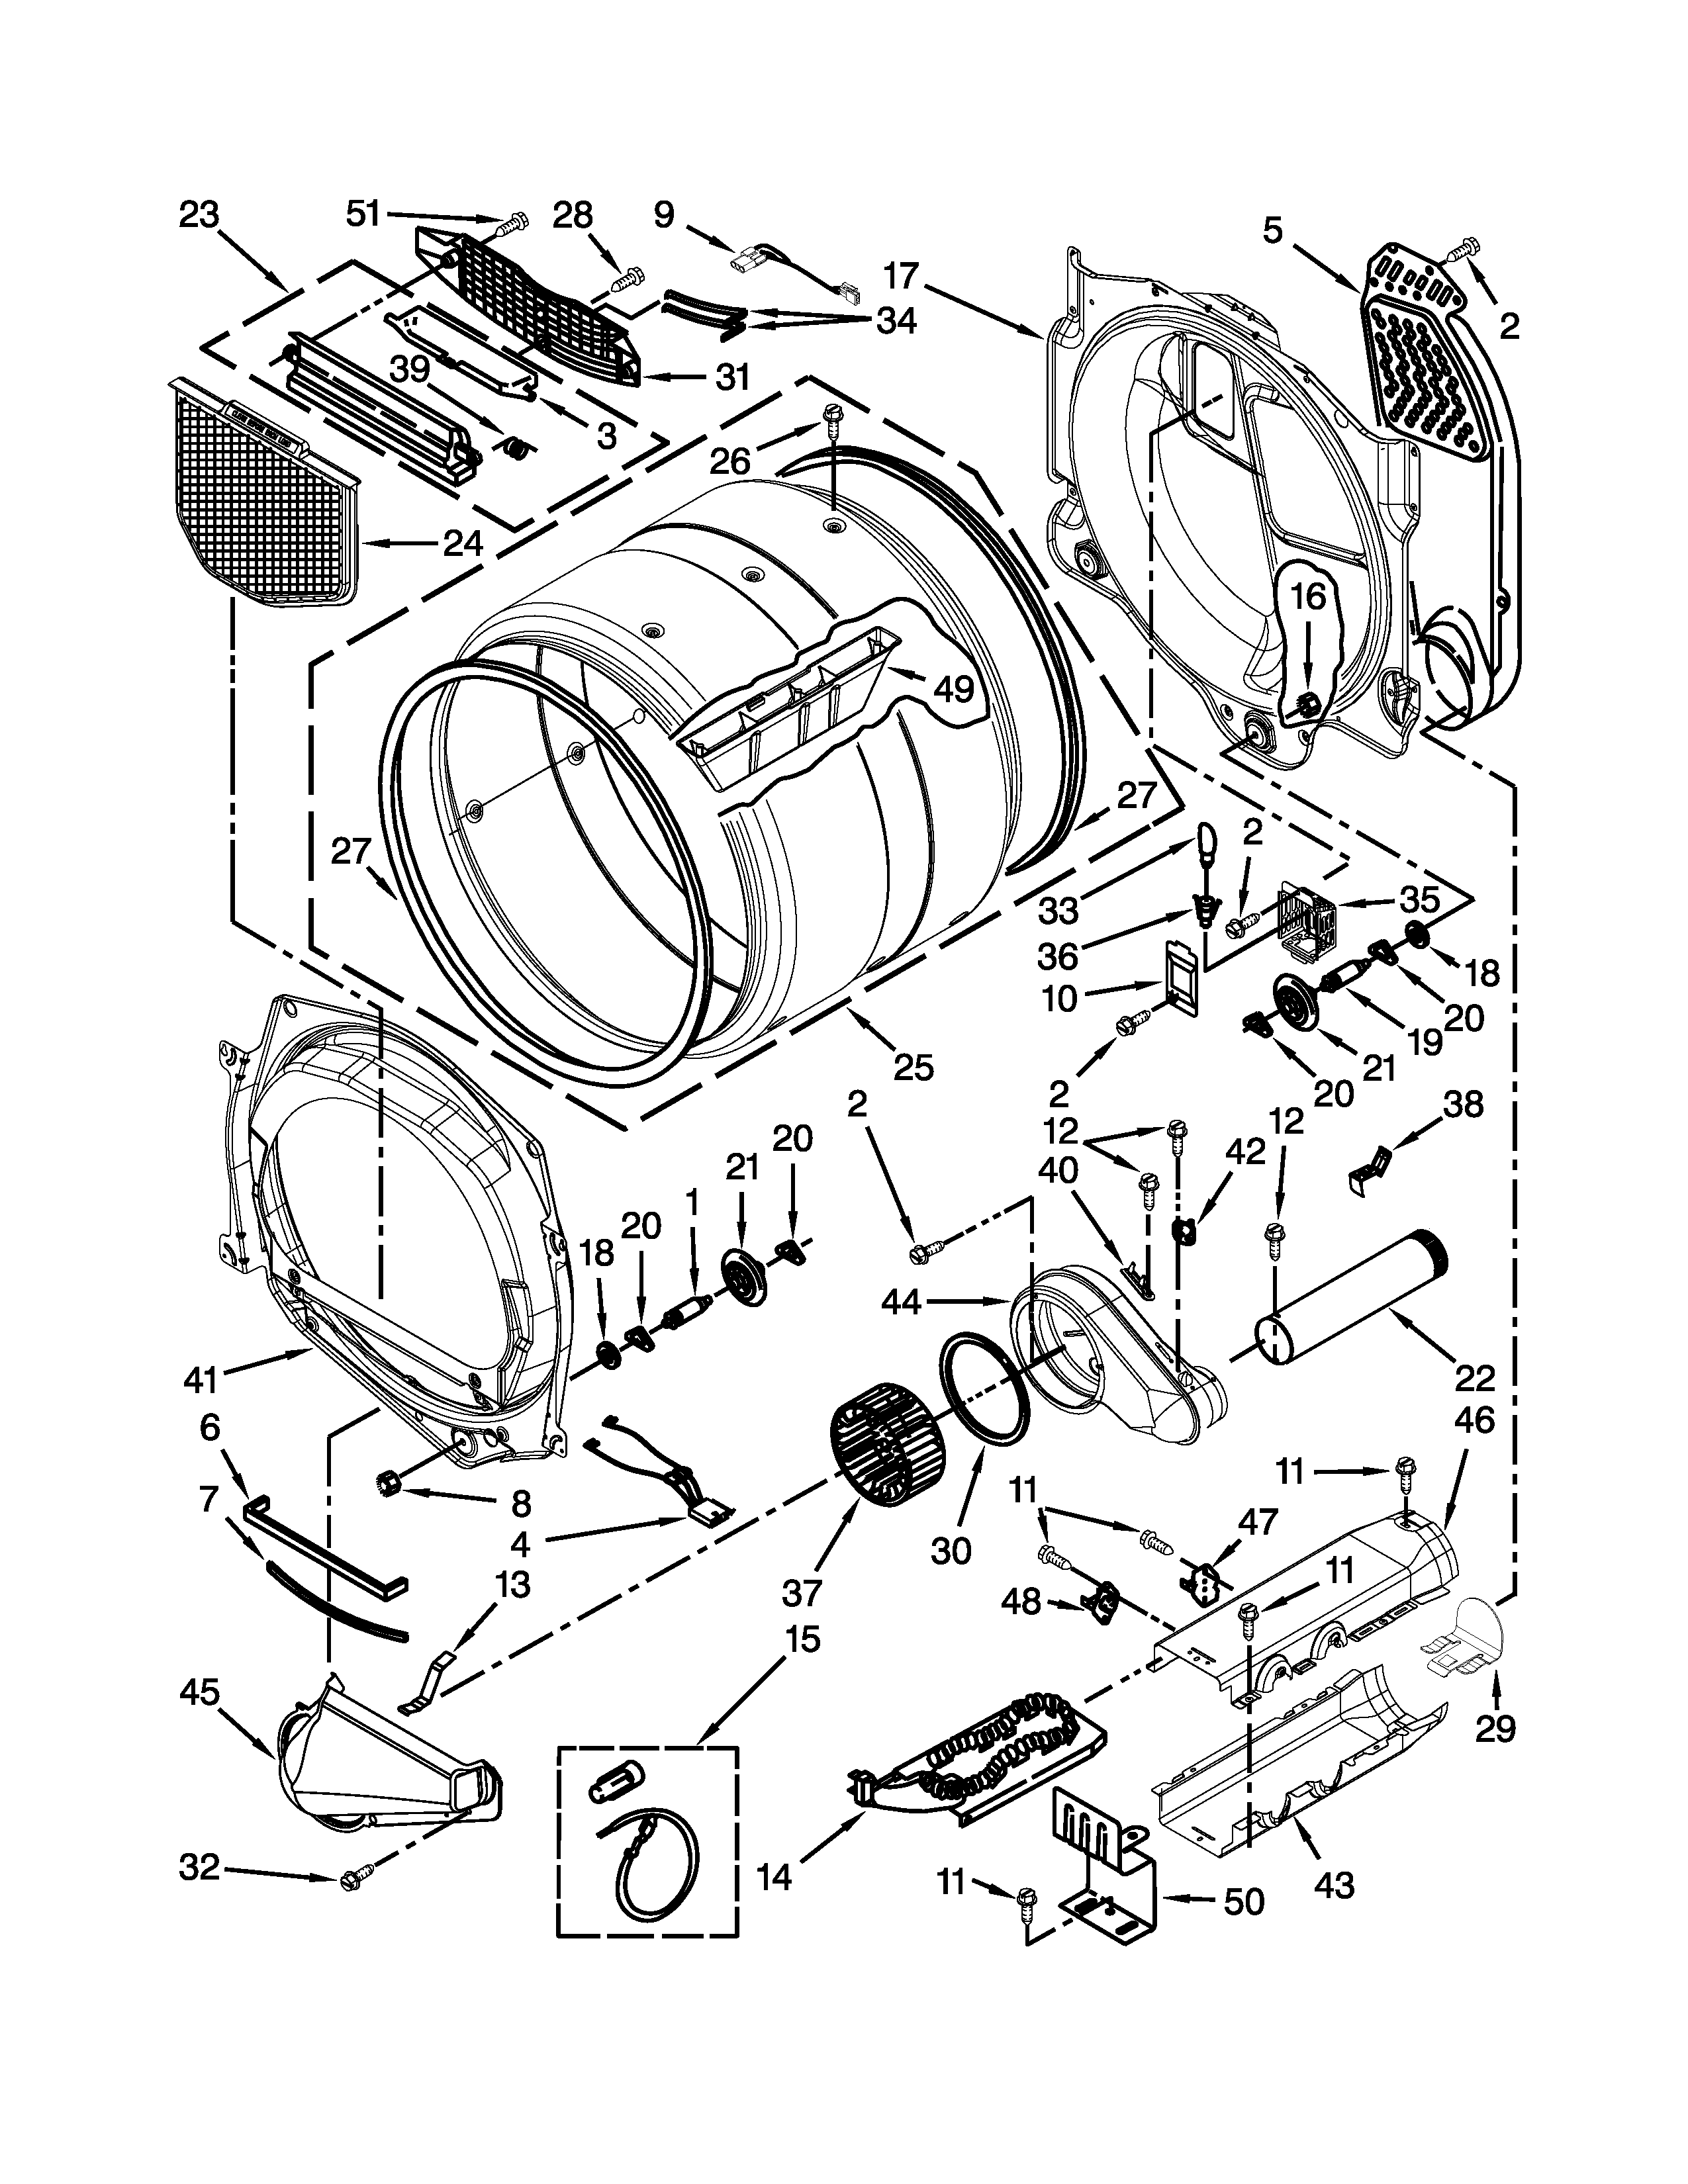 Whirlpool Duet Dryer Wiring Schematic